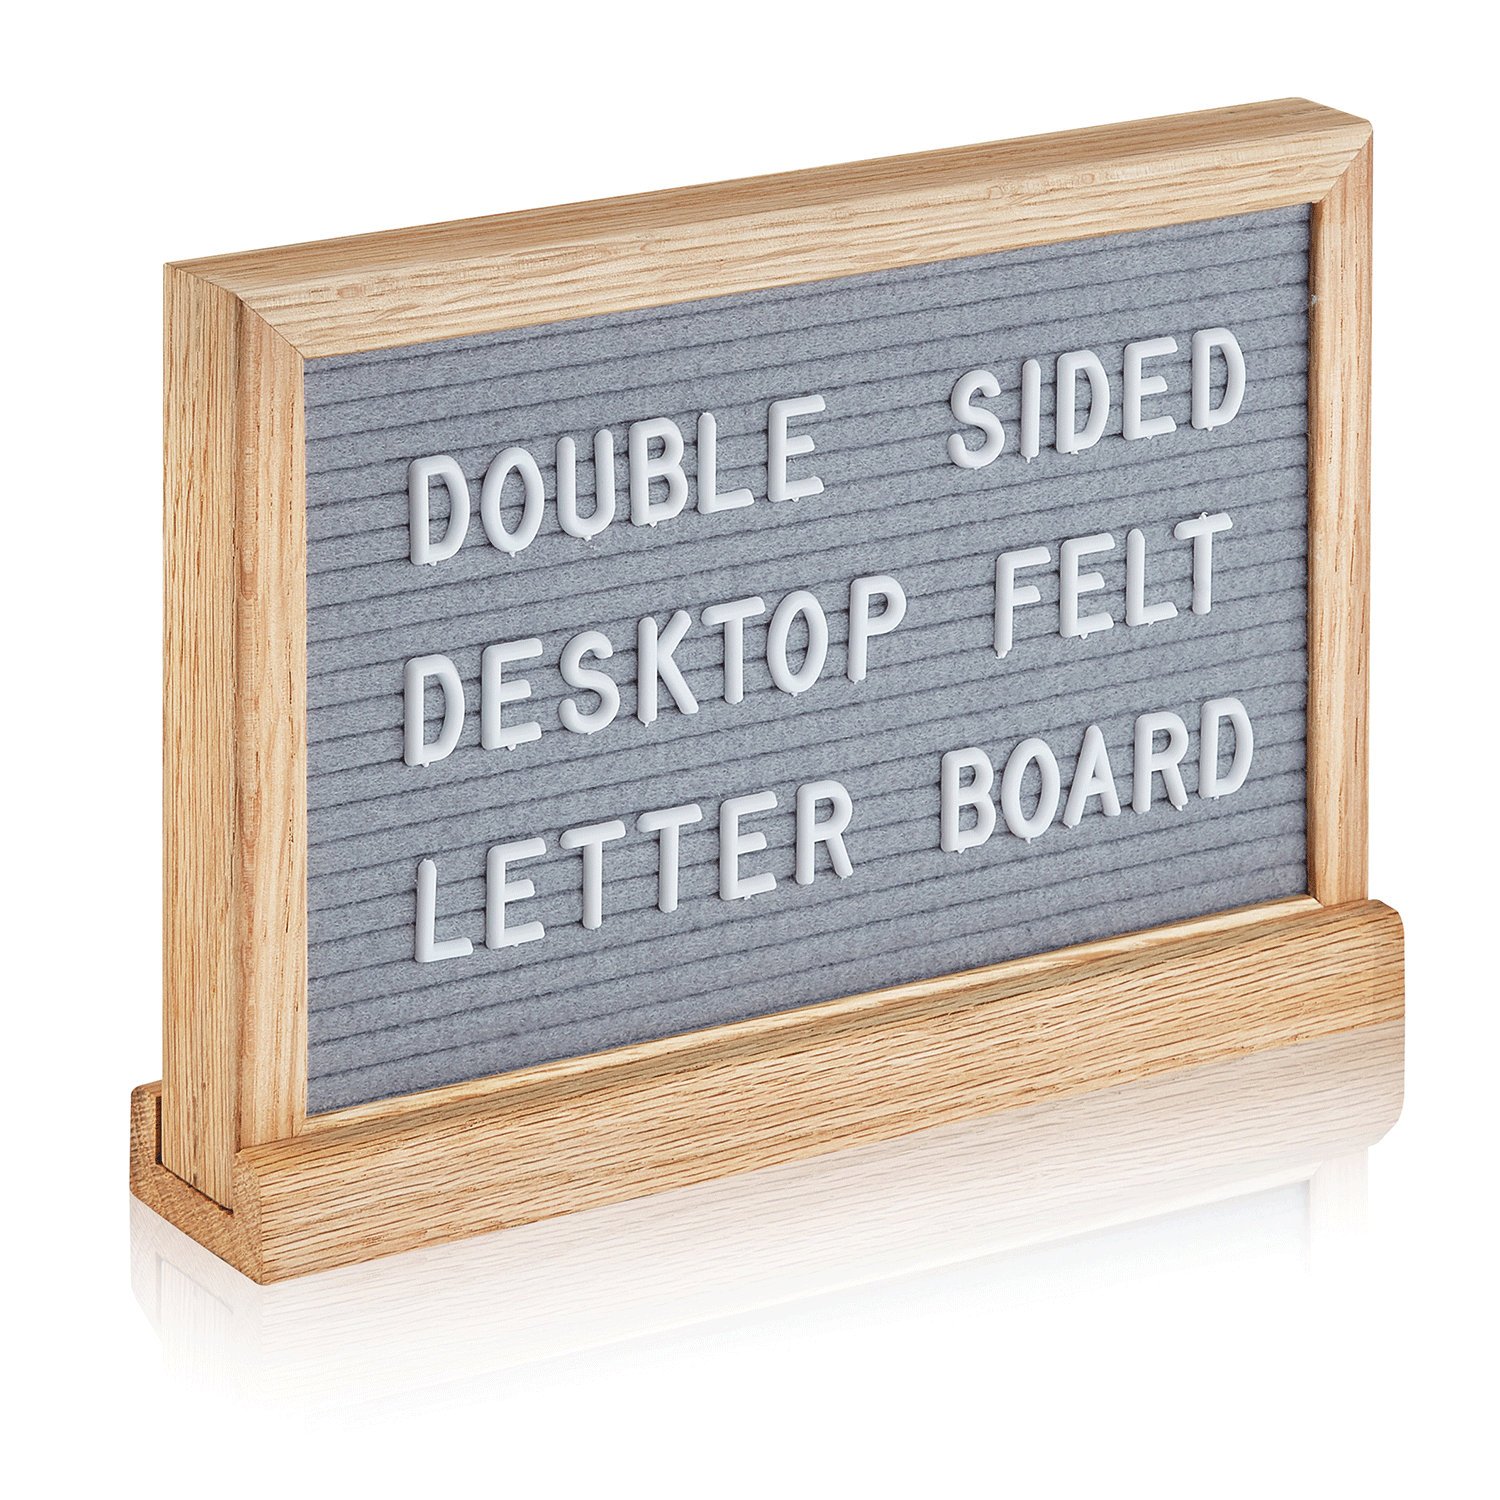 Double sided felt letter board 